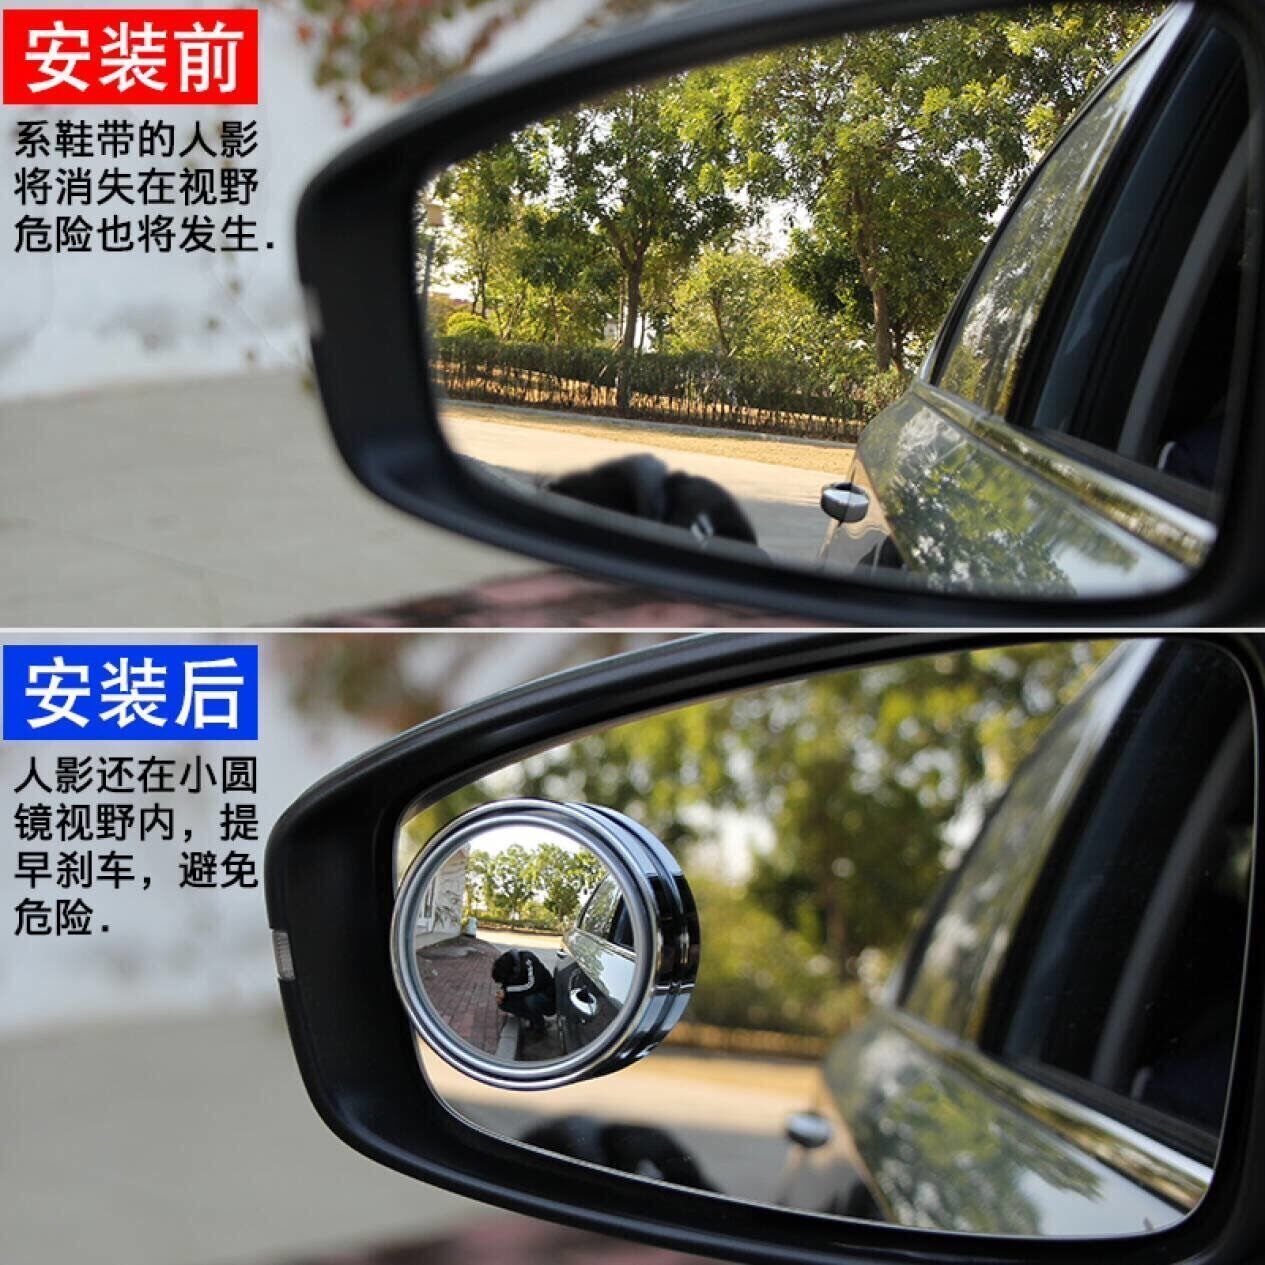 后视镜小圆镜汽车倒车反光盲点360度无边超清辅助镜盲区广角可调